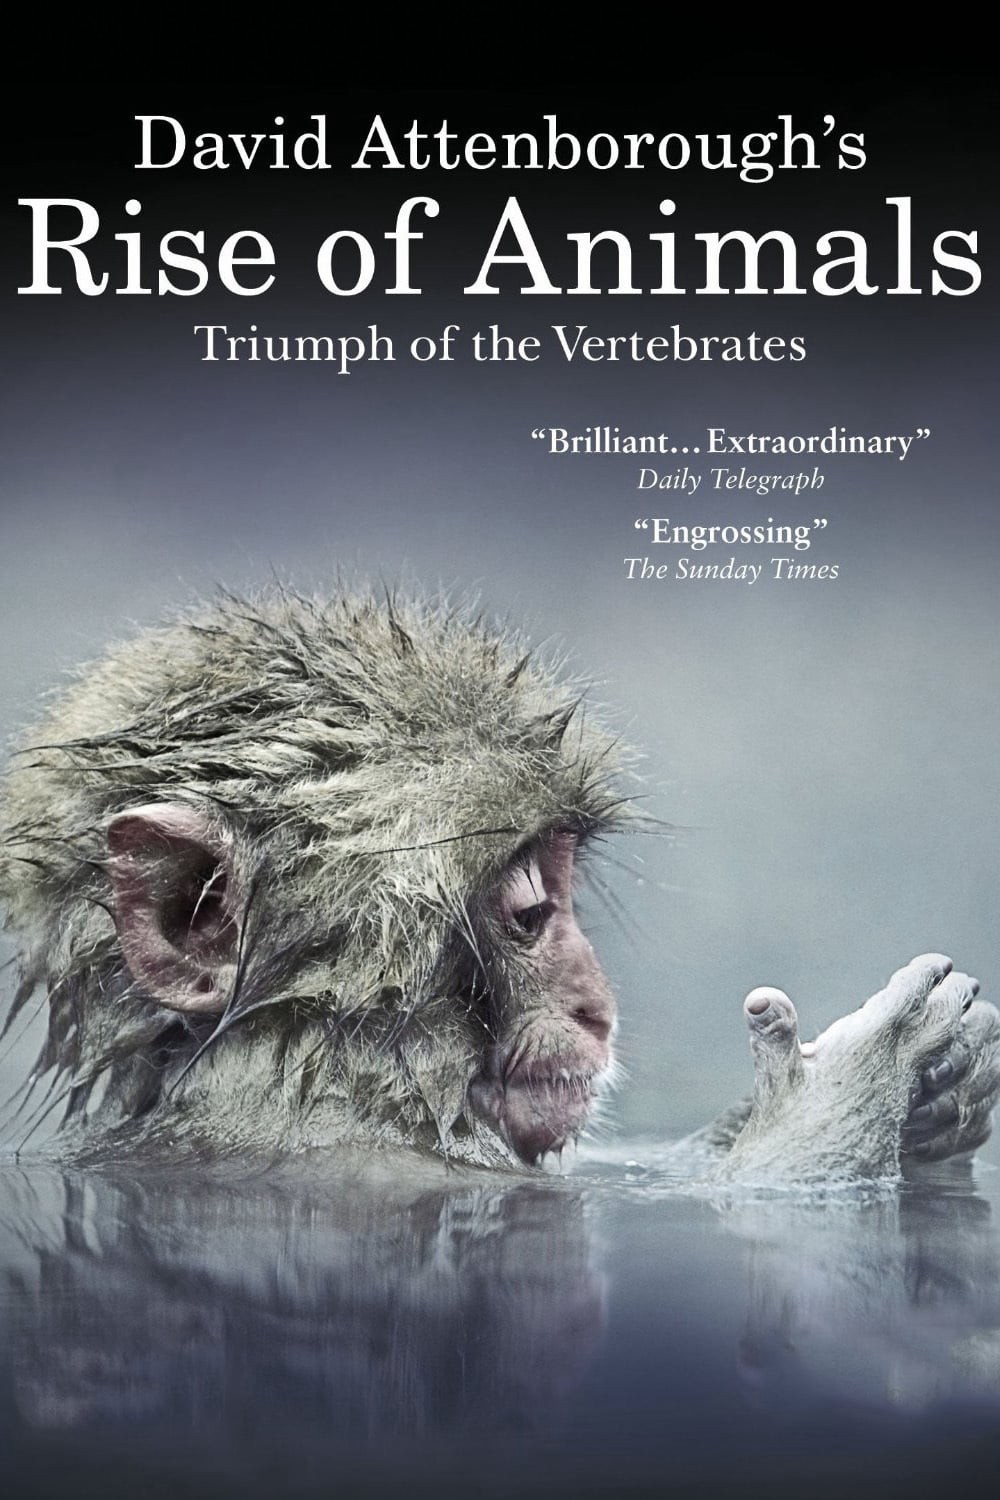 David Attenborough's Rise of Animals: Triumph of the Vertebrates 2013